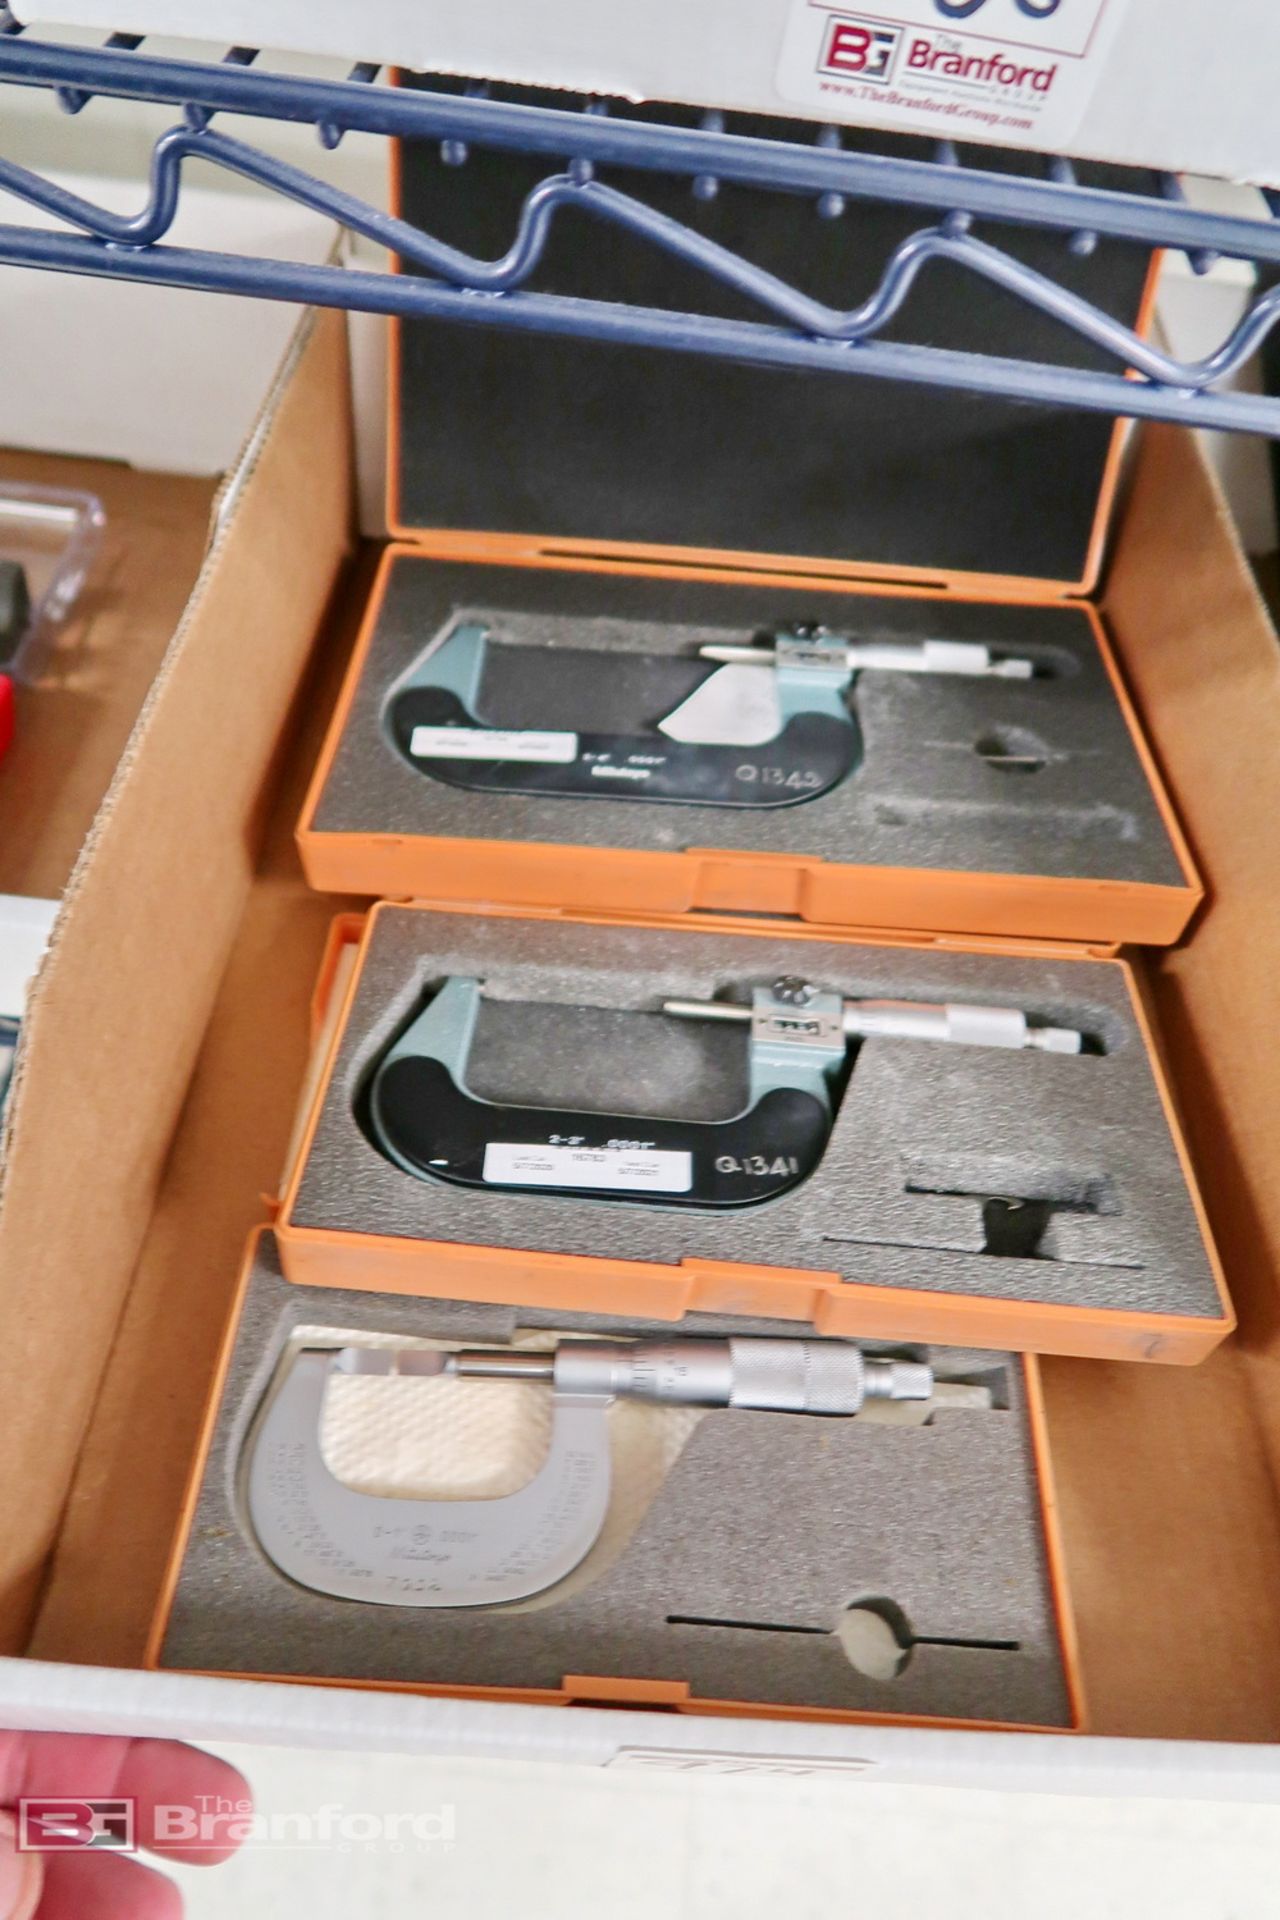 (3) Mitutoyo Standard Micrometers